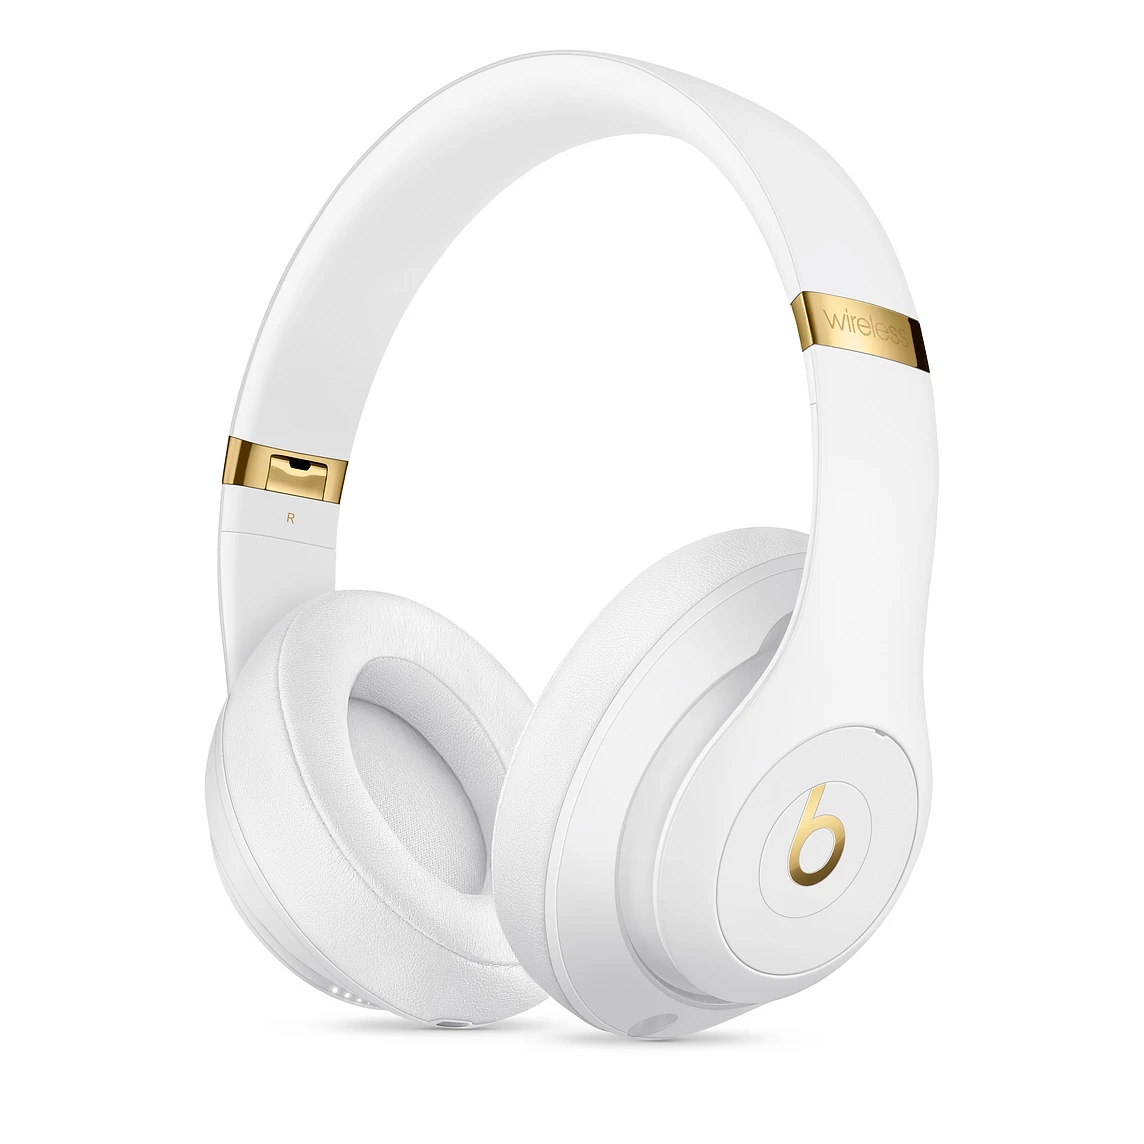 Навушники Beats Studio3 Wireless Over-Ear Headphones - White (MQ572)